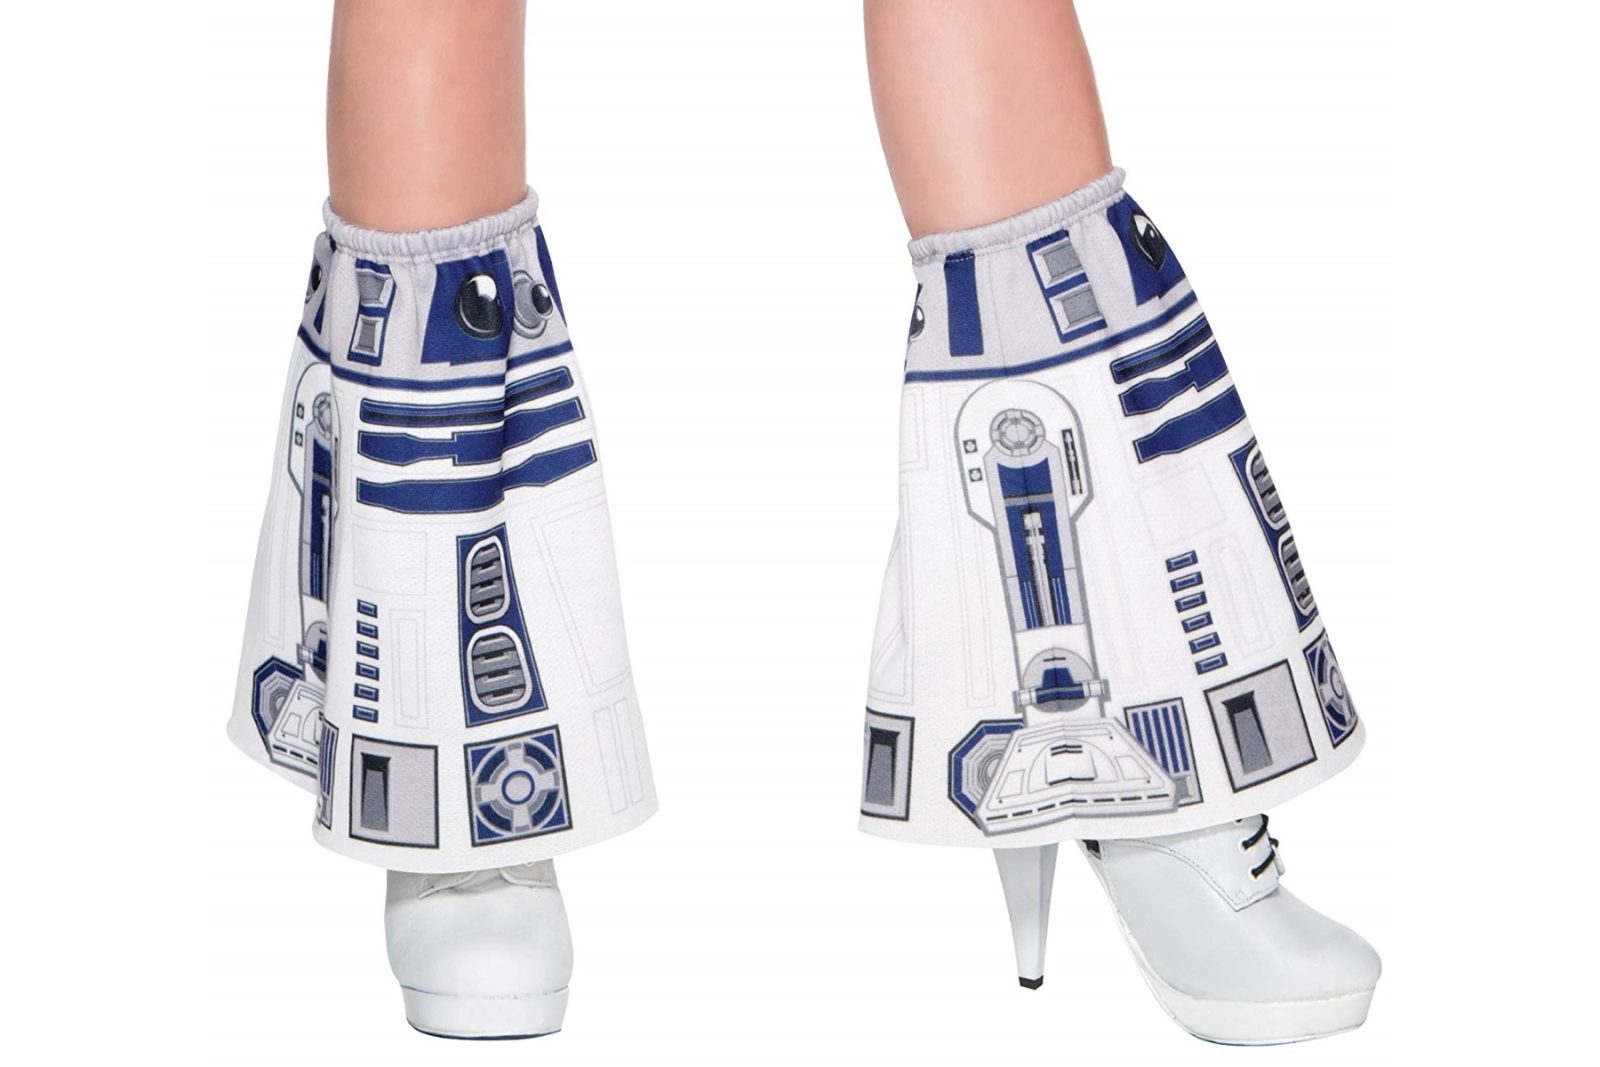 Star Wars R2-D2 Cosplay Legwear on Amazon